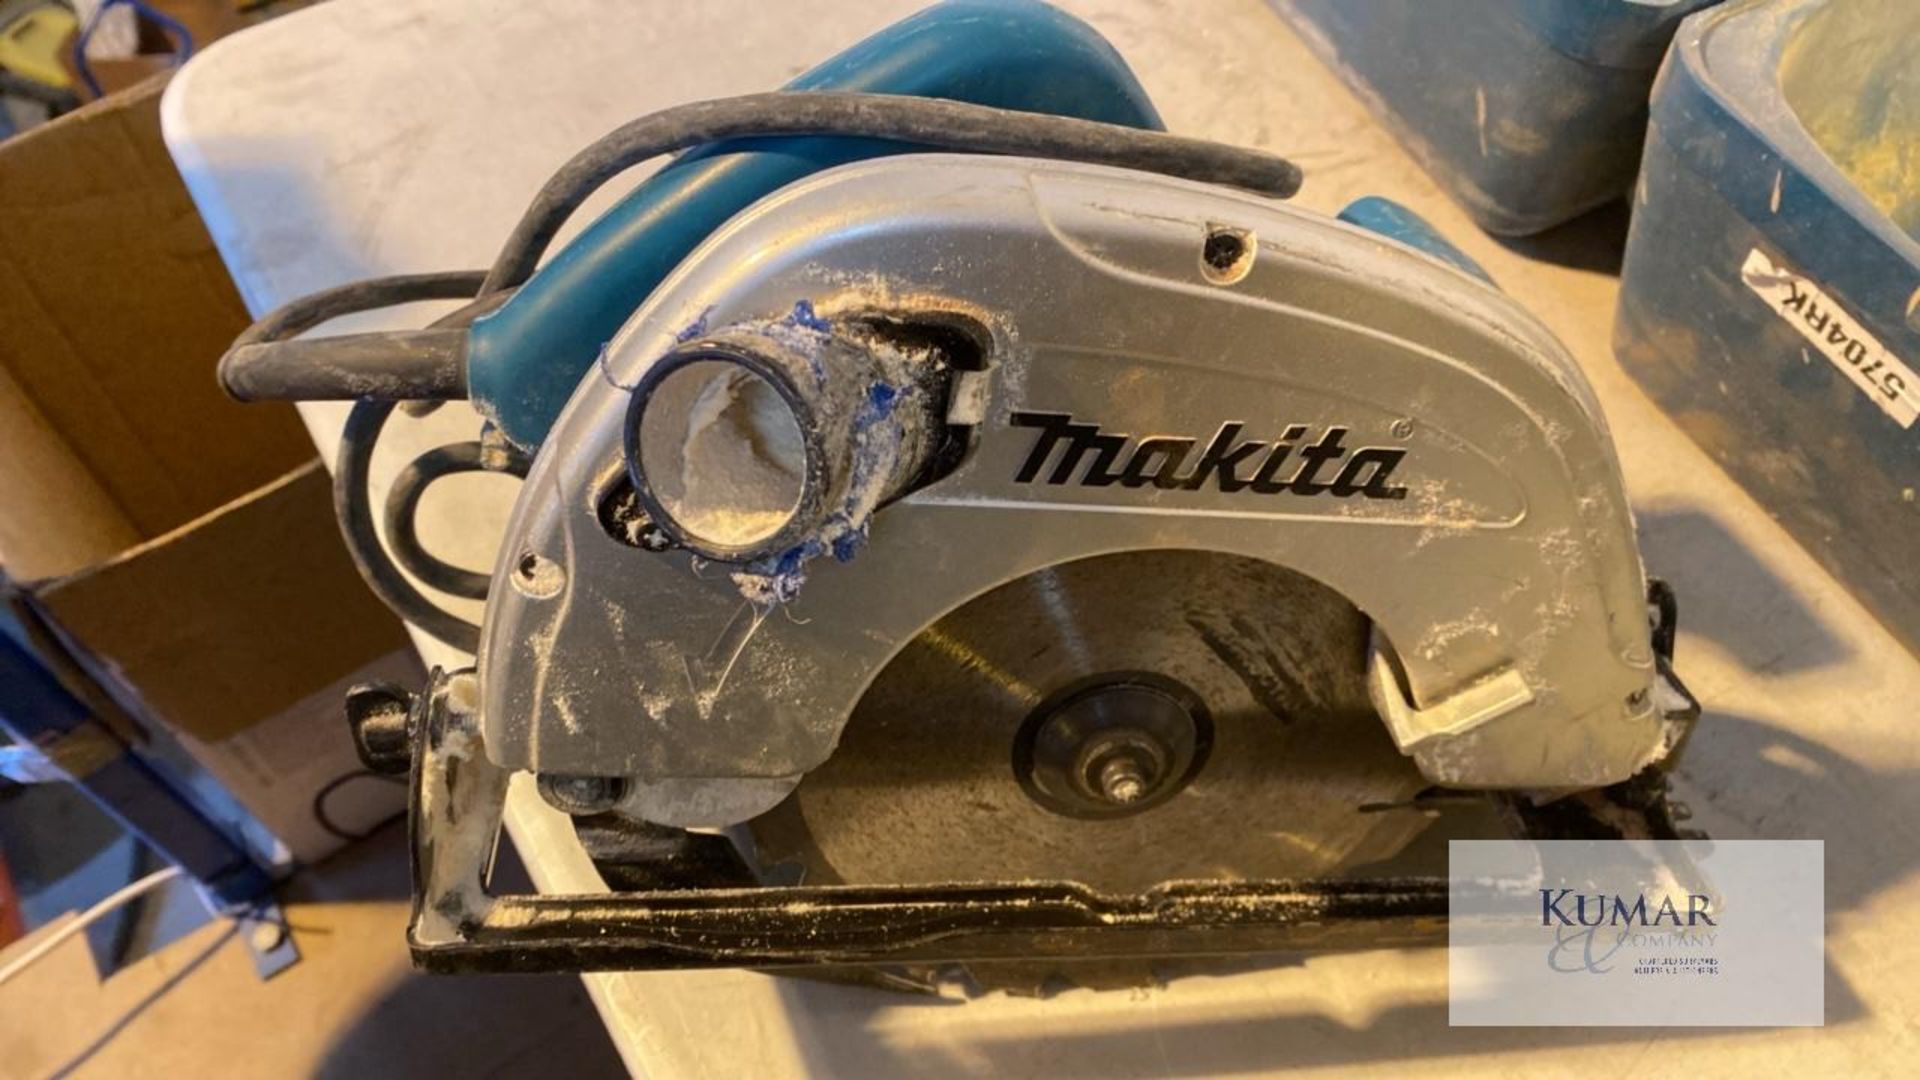 Makita 5704R Saw 110 Volt Circular Saw, Serial No.580322G (2014) 190mm Diameter - Image 4 of 5